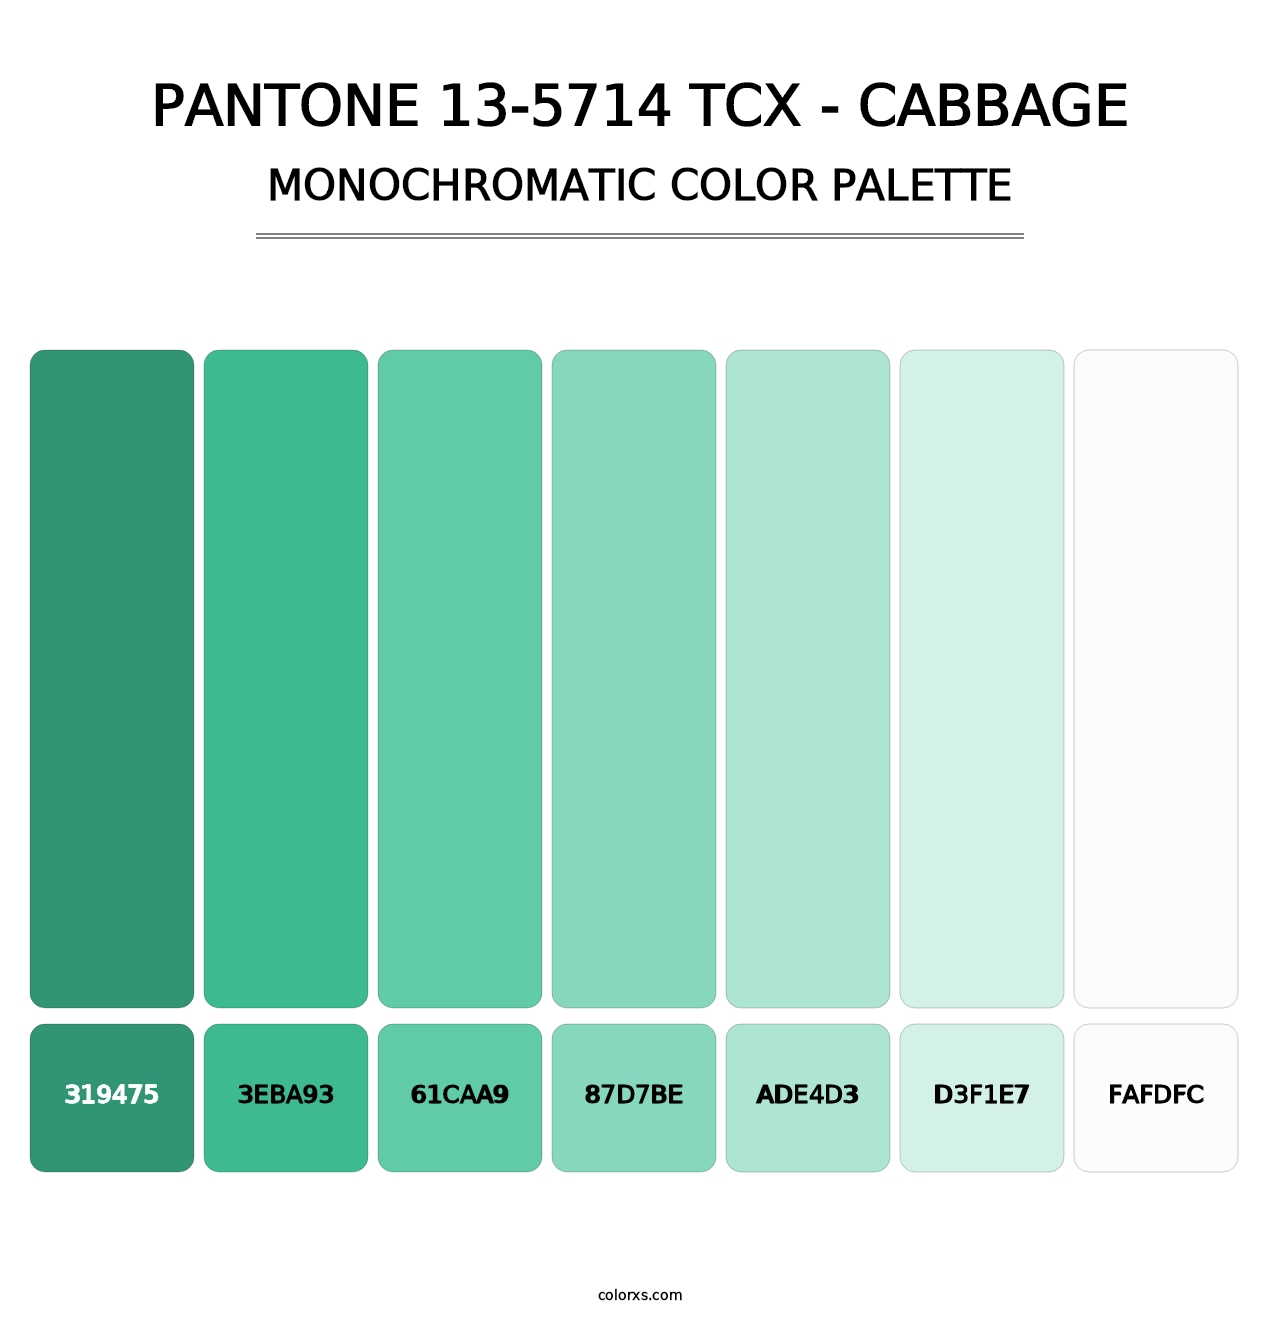 PANTONE 13-5714 TCX - Cabbage - Monochromatic Color Palette